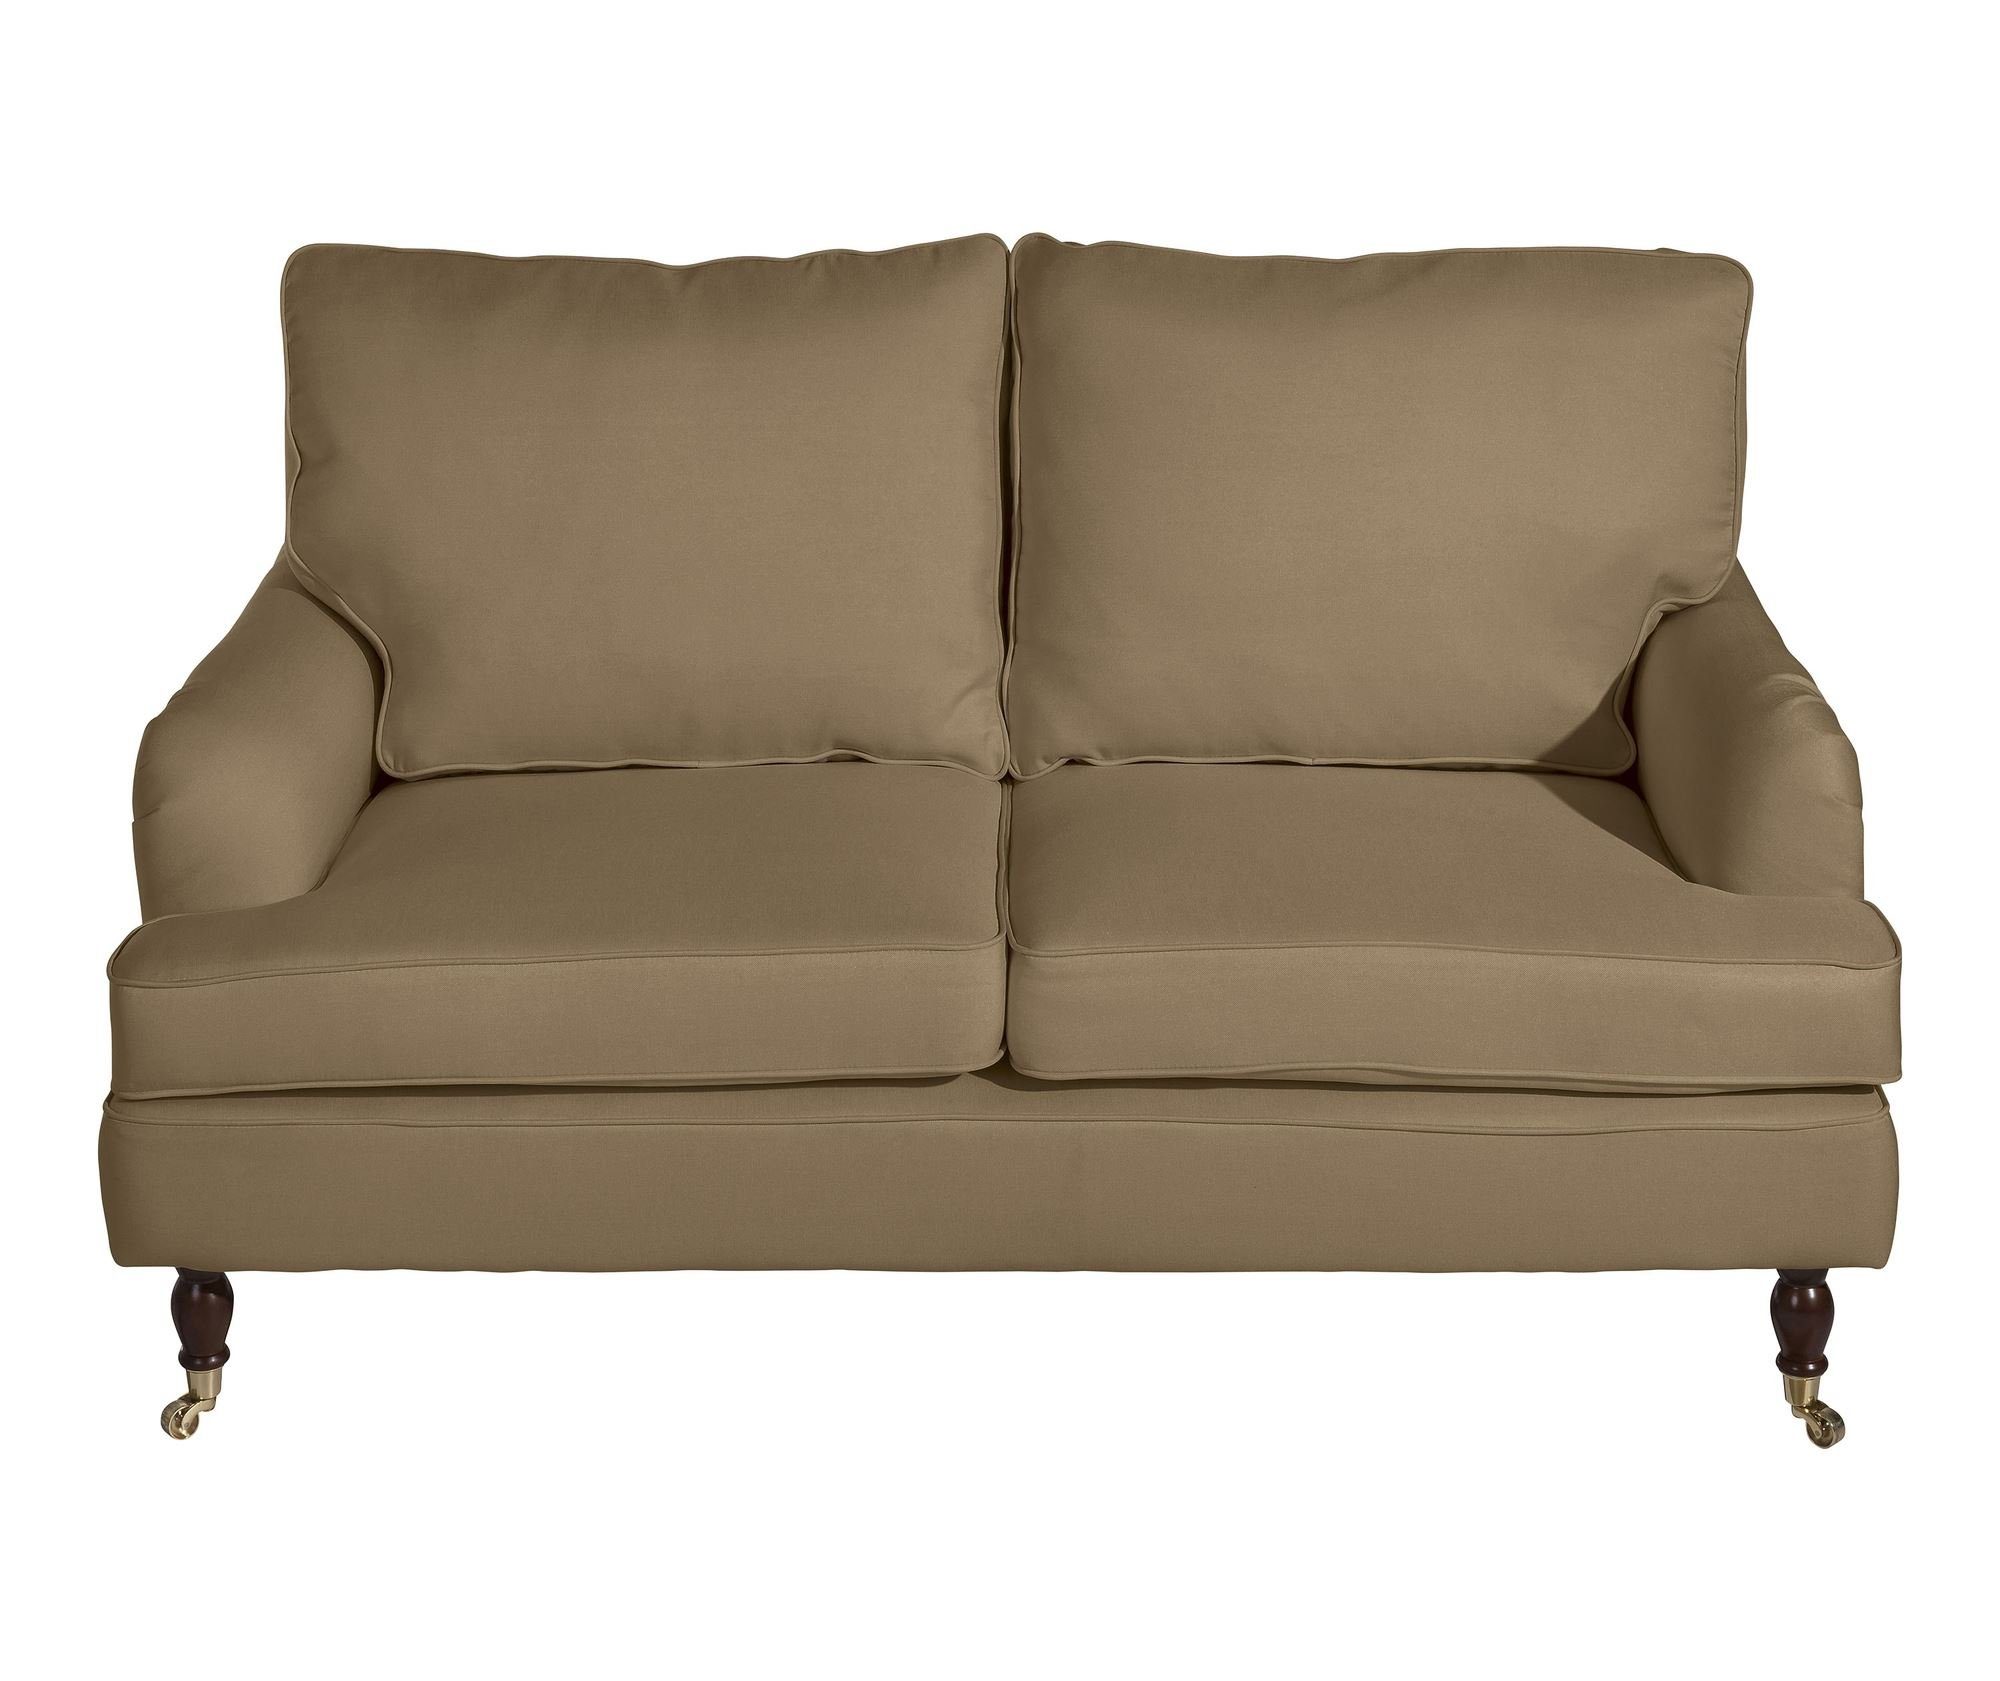 hochwertig Sofa aufm Kostenlosem 2-Sitzer Sparpreis Kessel Versand Sofa Buche Sitz 58 inkl. Flachgewebe Kathi Bezug 1 Teile, nussba, verarbeitet,bequemer